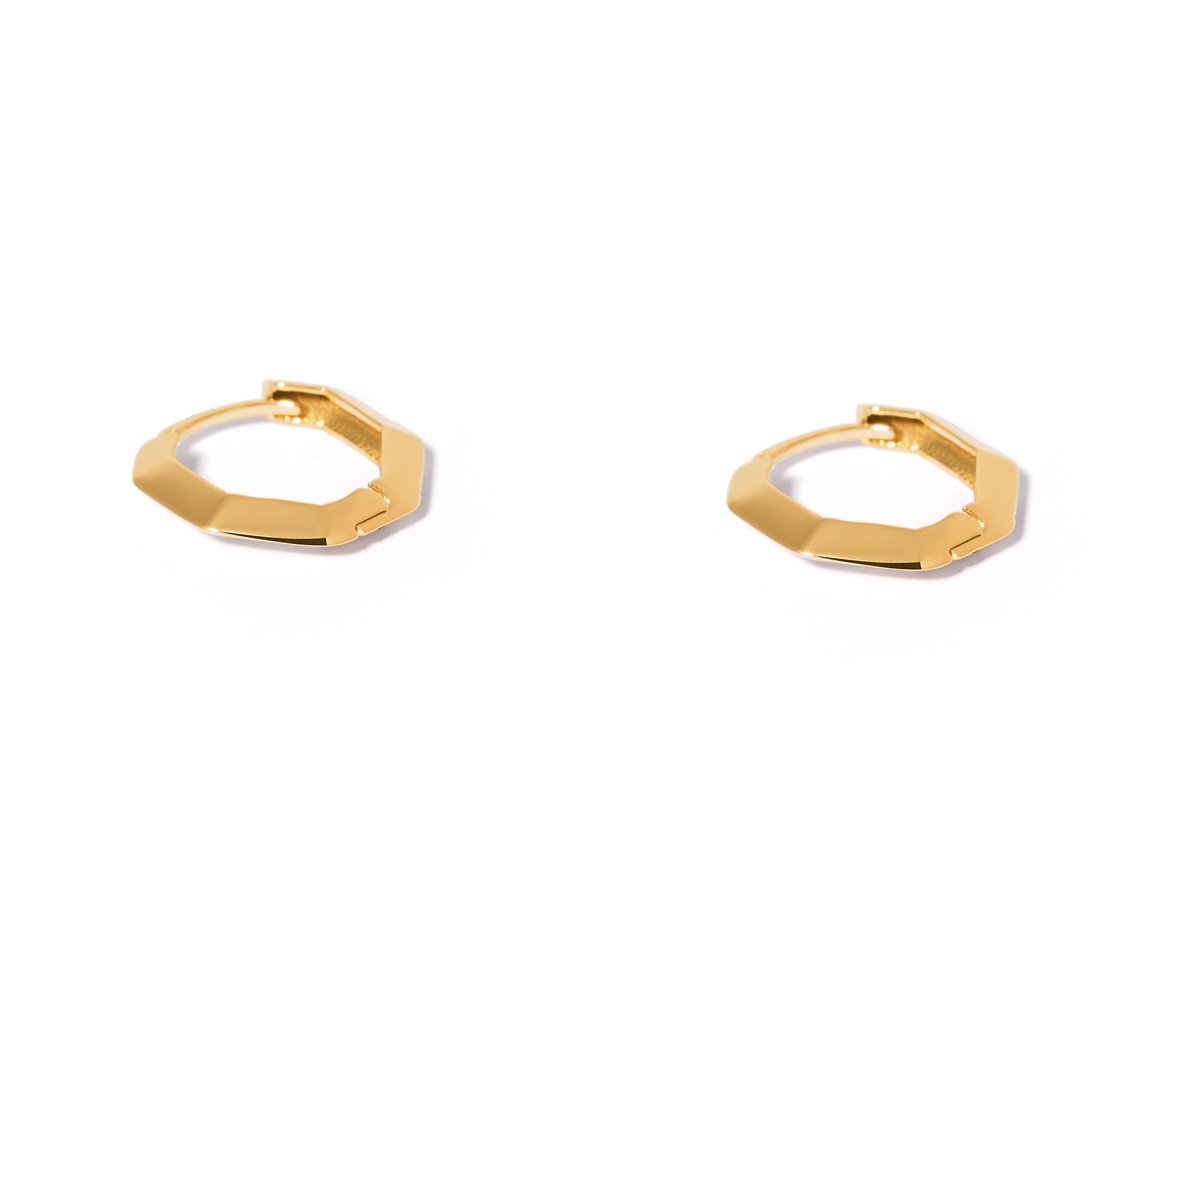 Polygonal ring gold earrings g